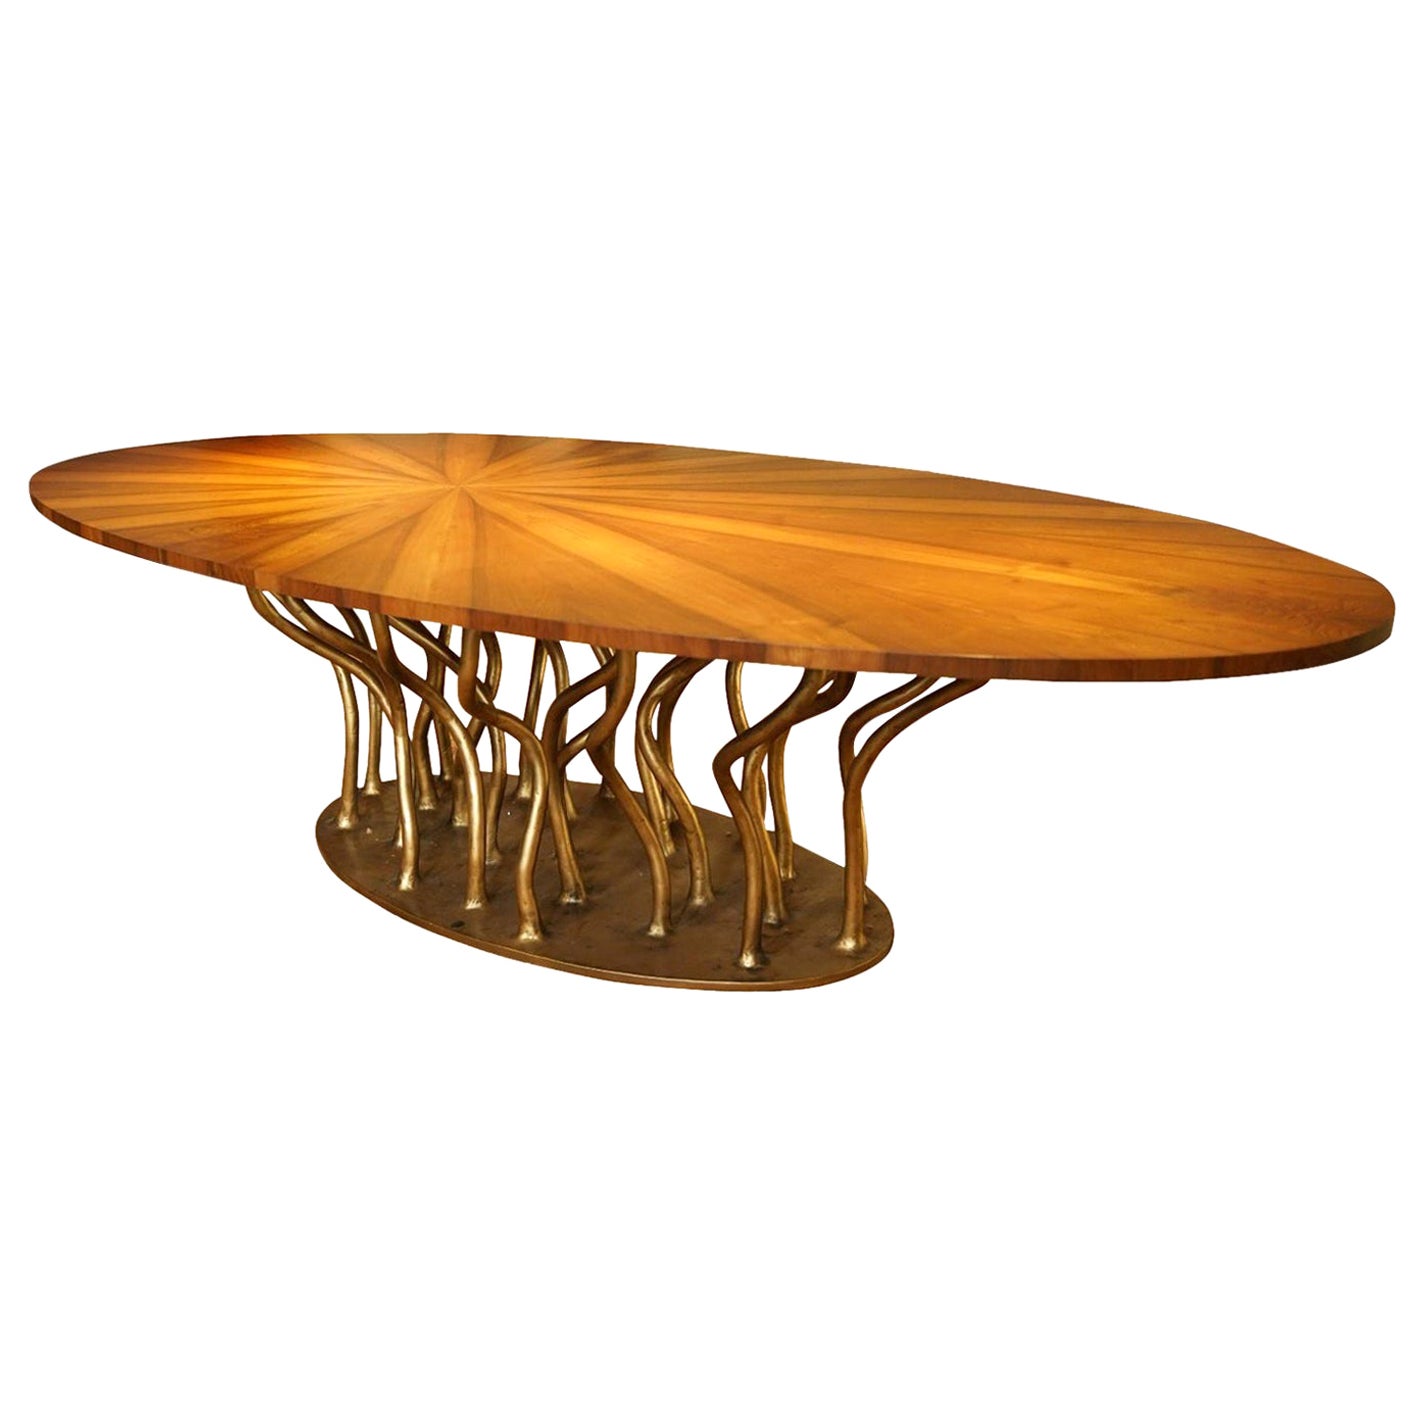 New Design Bronze Walnut Wood Dining Table Ready for Delivery Now (Table de salle à manger en bois de noyer bronzé prête à être livrée)